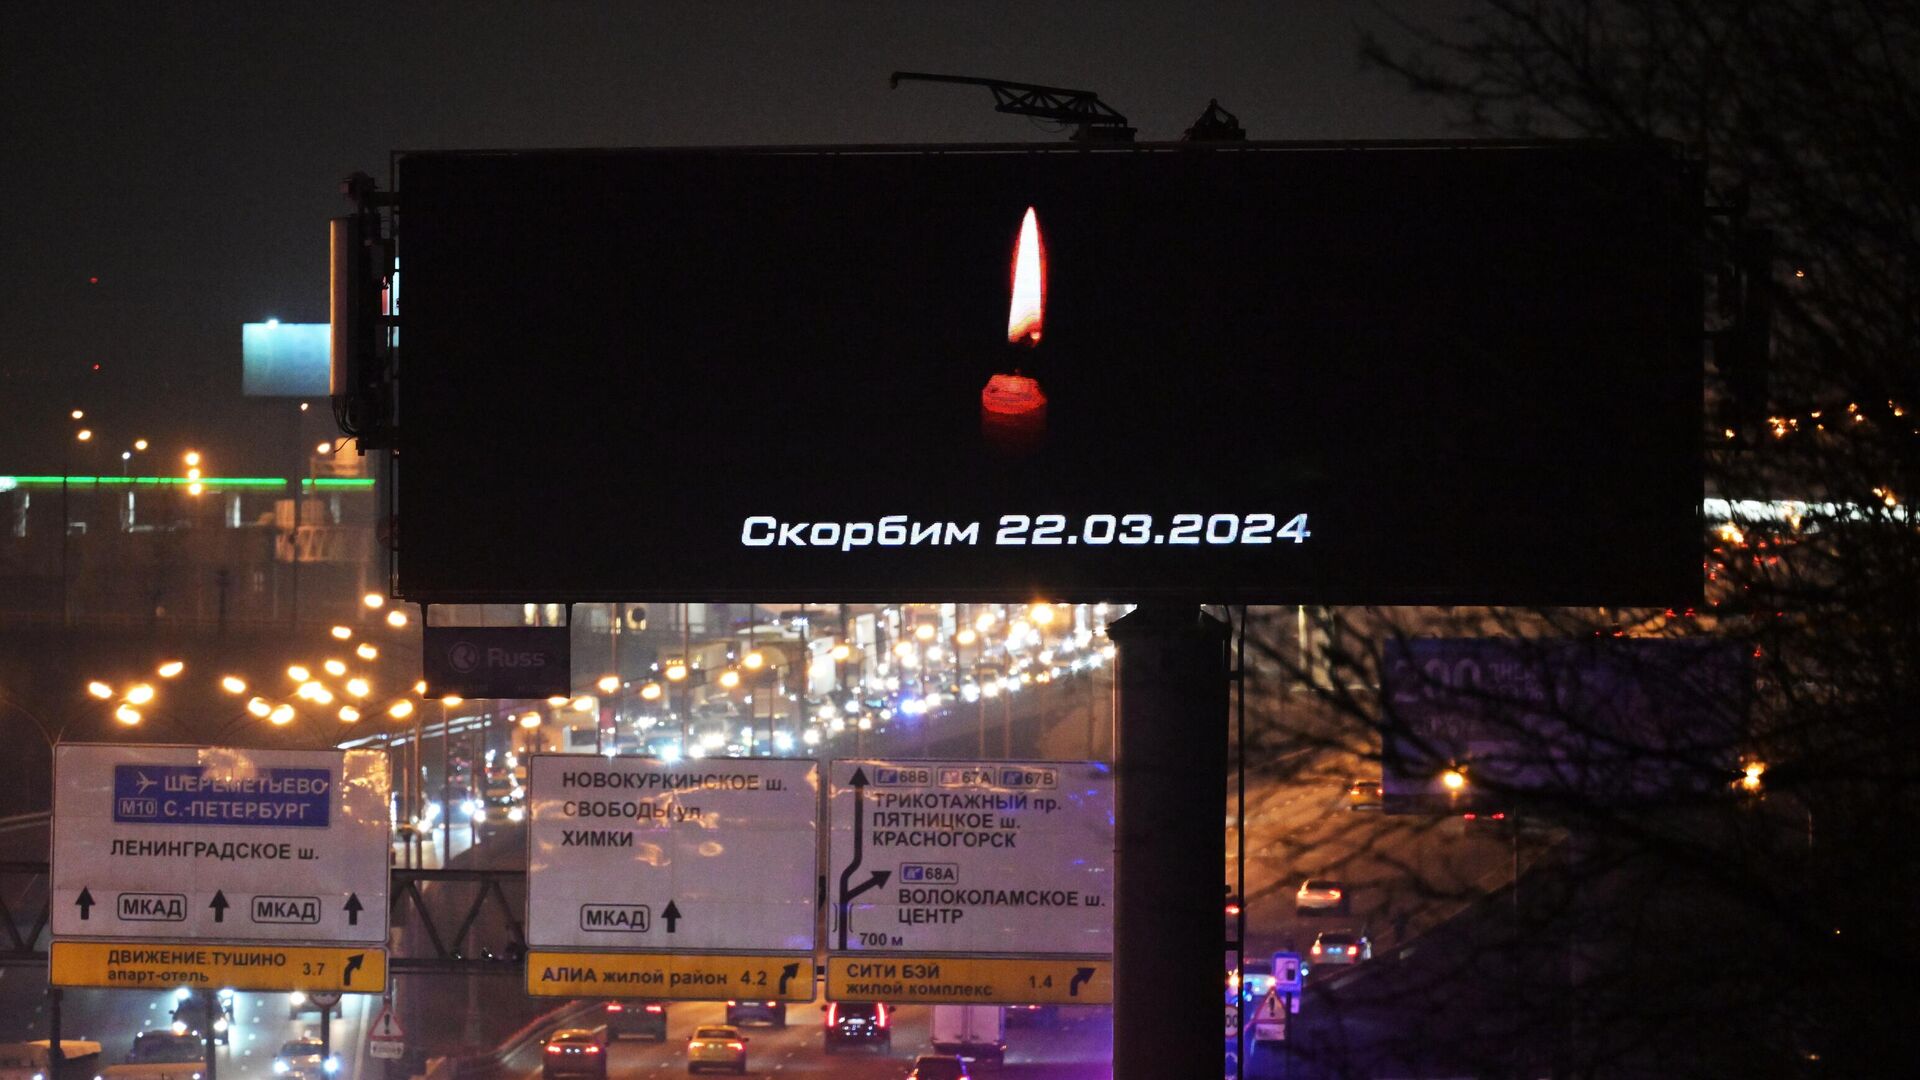 Сообщение Скорбим на рекламном экране, расположенном недалеко от концертного зала Крокус Сити Холл, где произошла стрельба1